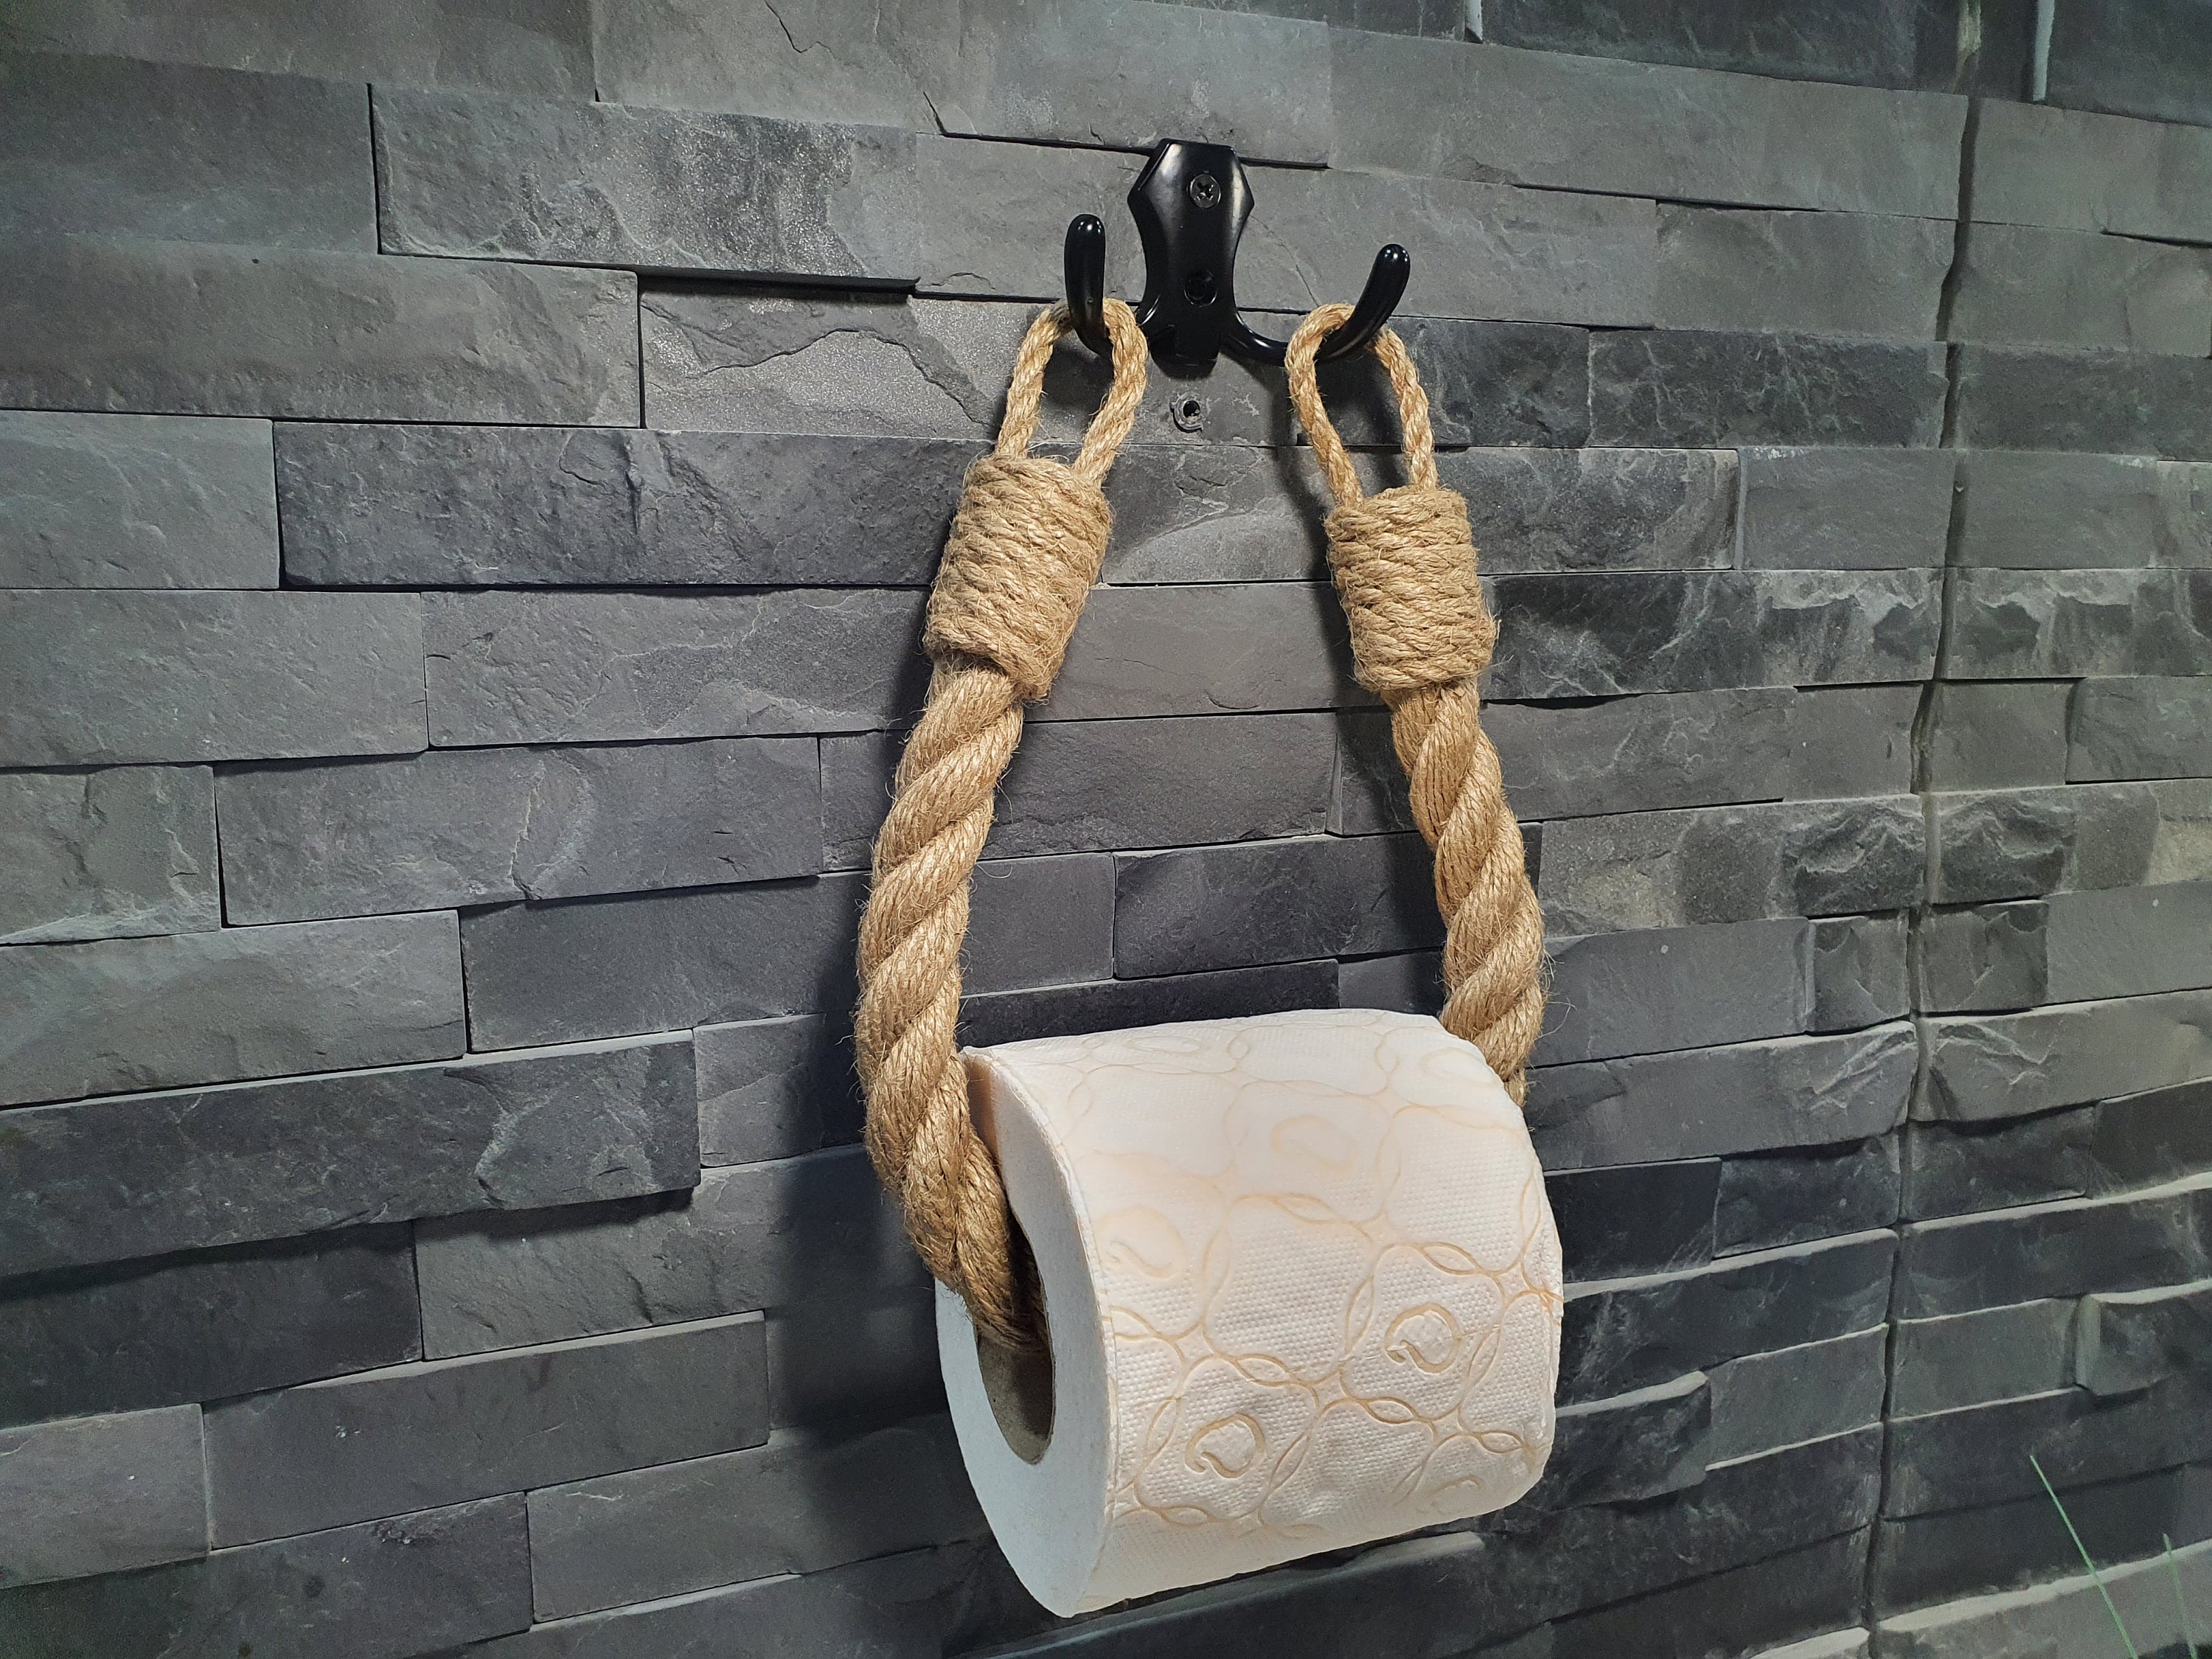 Porte rouleau papier toilette rustique ESCPTLL00 - Artehierro